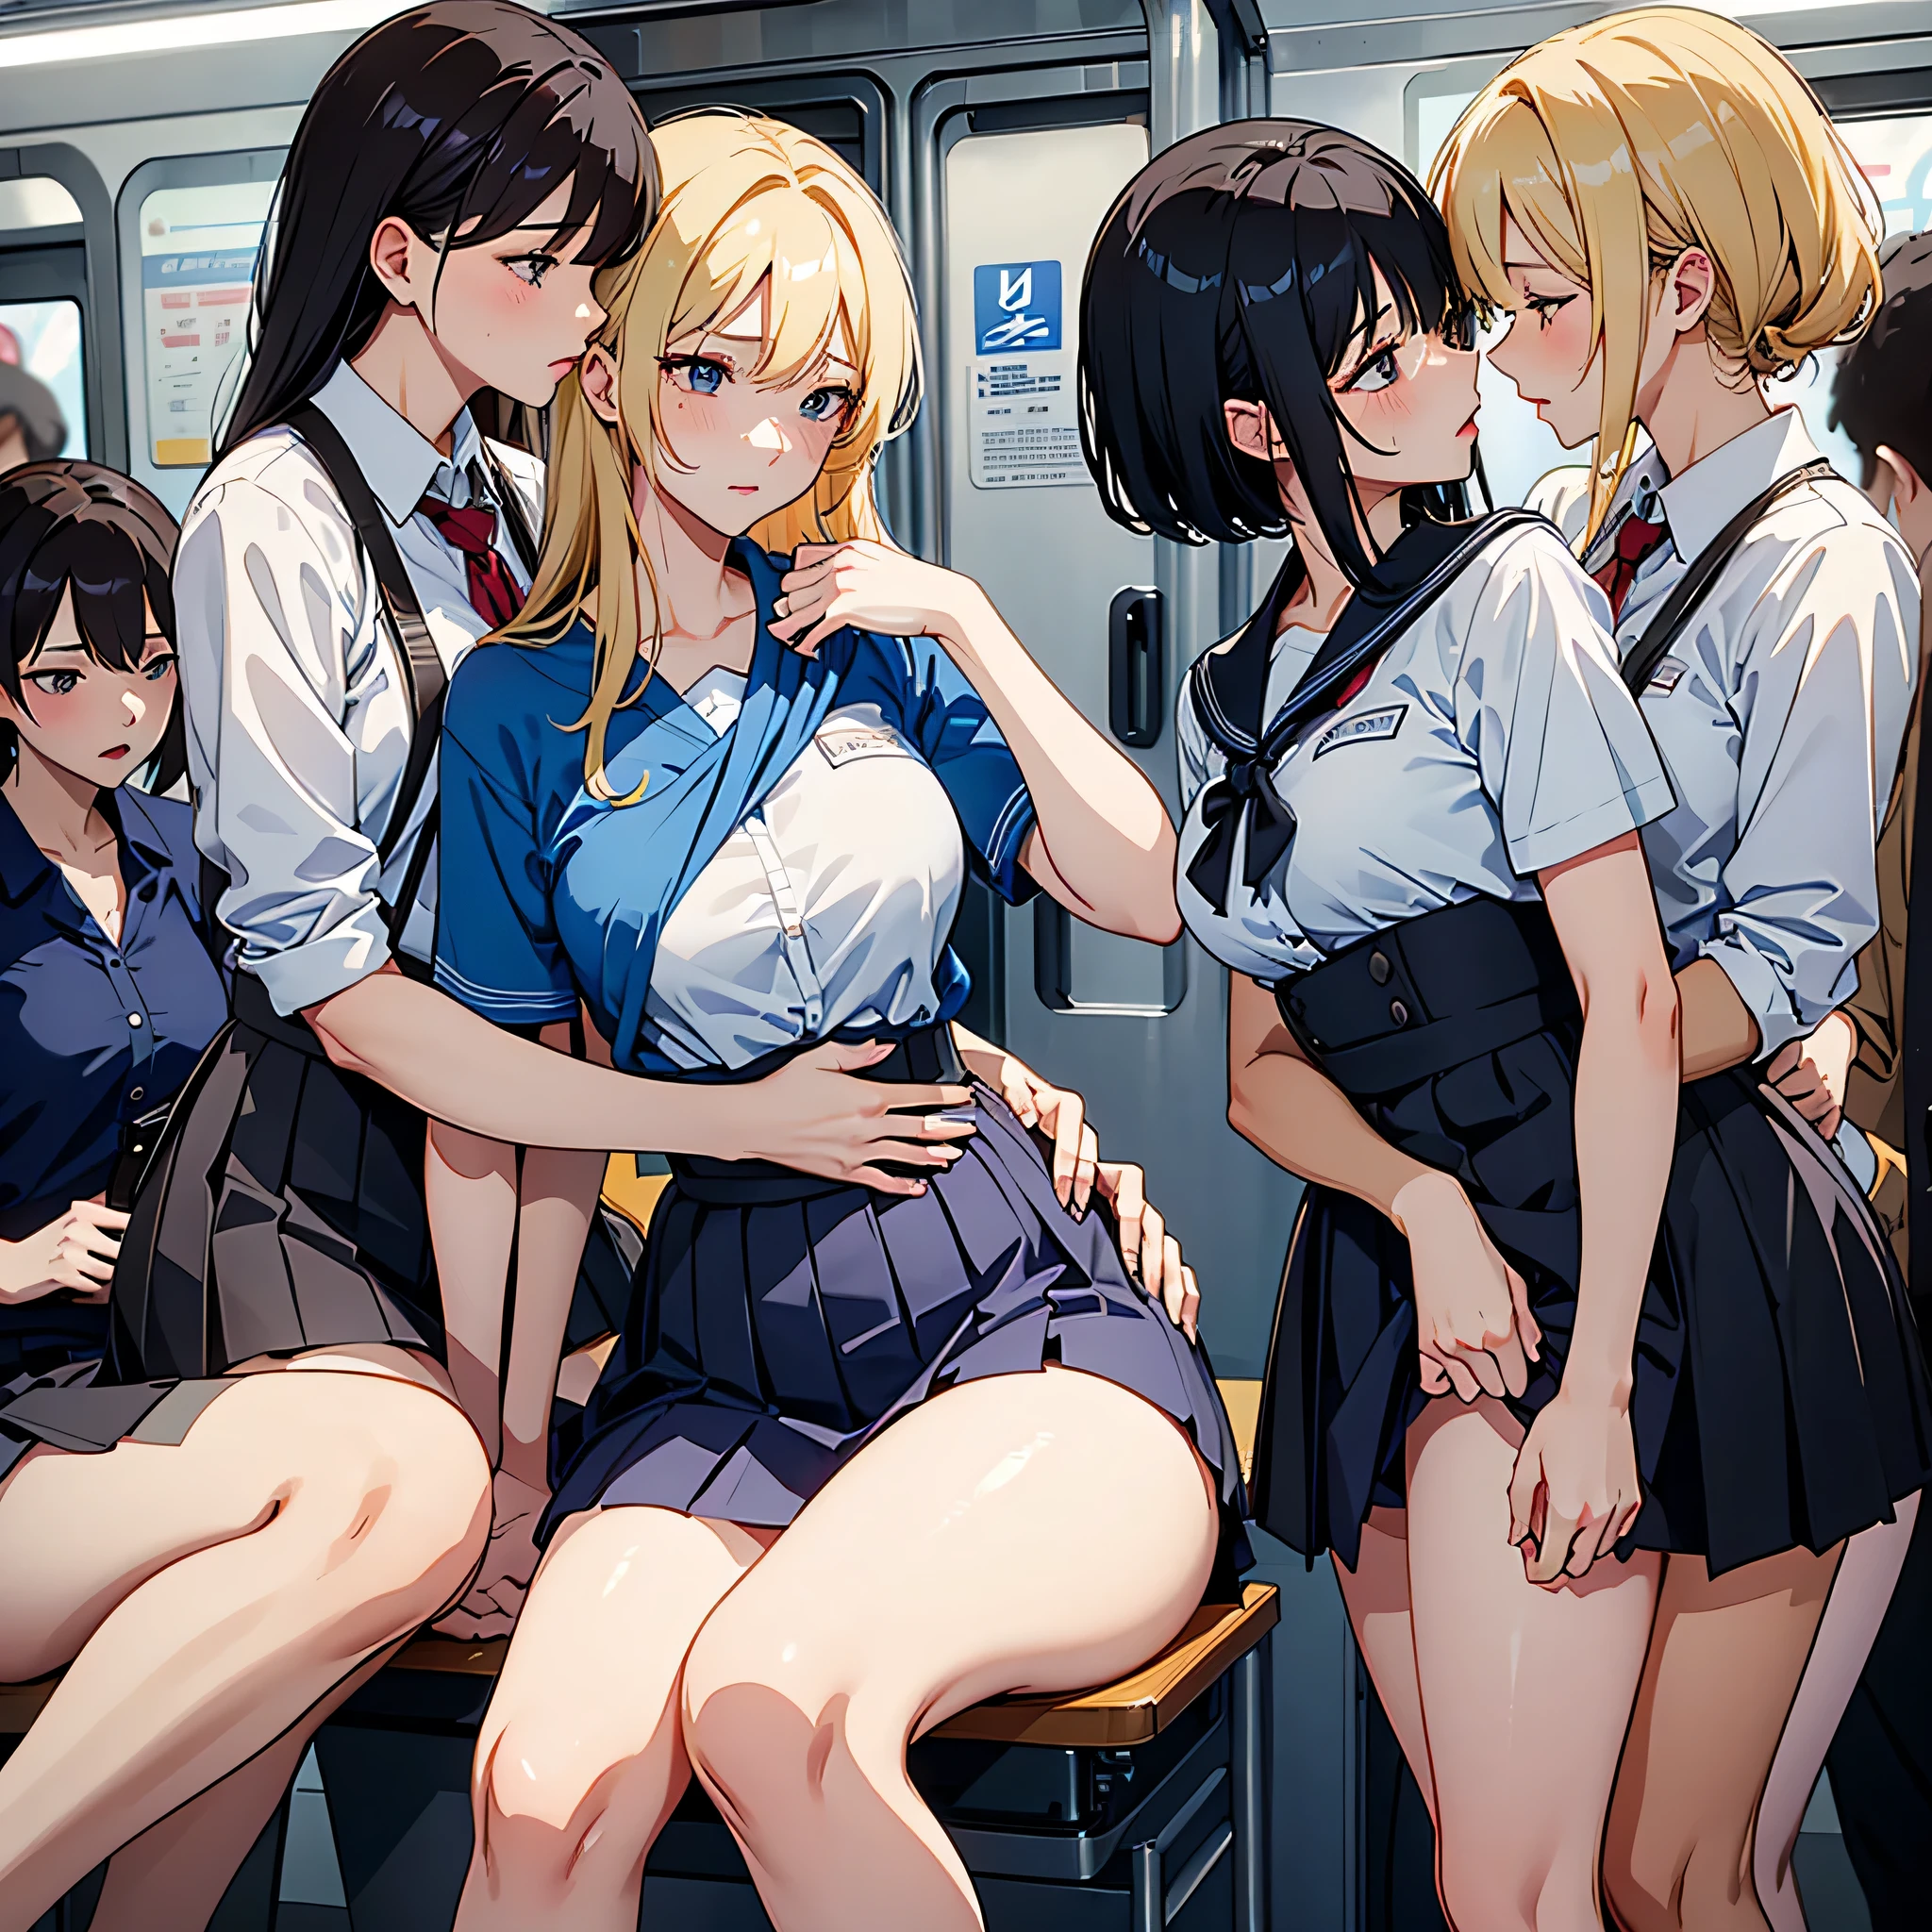 nsfw, fotorrealista, qualidade máxima, Obra de arte, 4 mulheres coreanas , Apenas mulheres coreanas, ABSOLUTAMENTE NENHUM HOMEM, absolutamente nenhum homem, Cenário detalhado do interior do trem de metrô apenas feminino MUITO lotado, VERY crowded Apenas mulheres coreanas subway train interior detailed background, steing insanely hot (Mulher 1) usando sexy ((uniforme escolar)), (((saia levantada)), (coxas grossas), (expressão de medo), rosto corado, (mulher 2) jovem sexy, cabelo loiro, Olhar confuso, mature woman ass groping Mulher 1 from behind, mulher 2 touches Mulher 1 vagina, young mulher 2 caressing Mulher 1 legs, Beijo molhado, Beijo lésbico,  (((mature woman pressing her chest on Mulher 1 back))) e (((segurando a cintura dela atrás dela)))